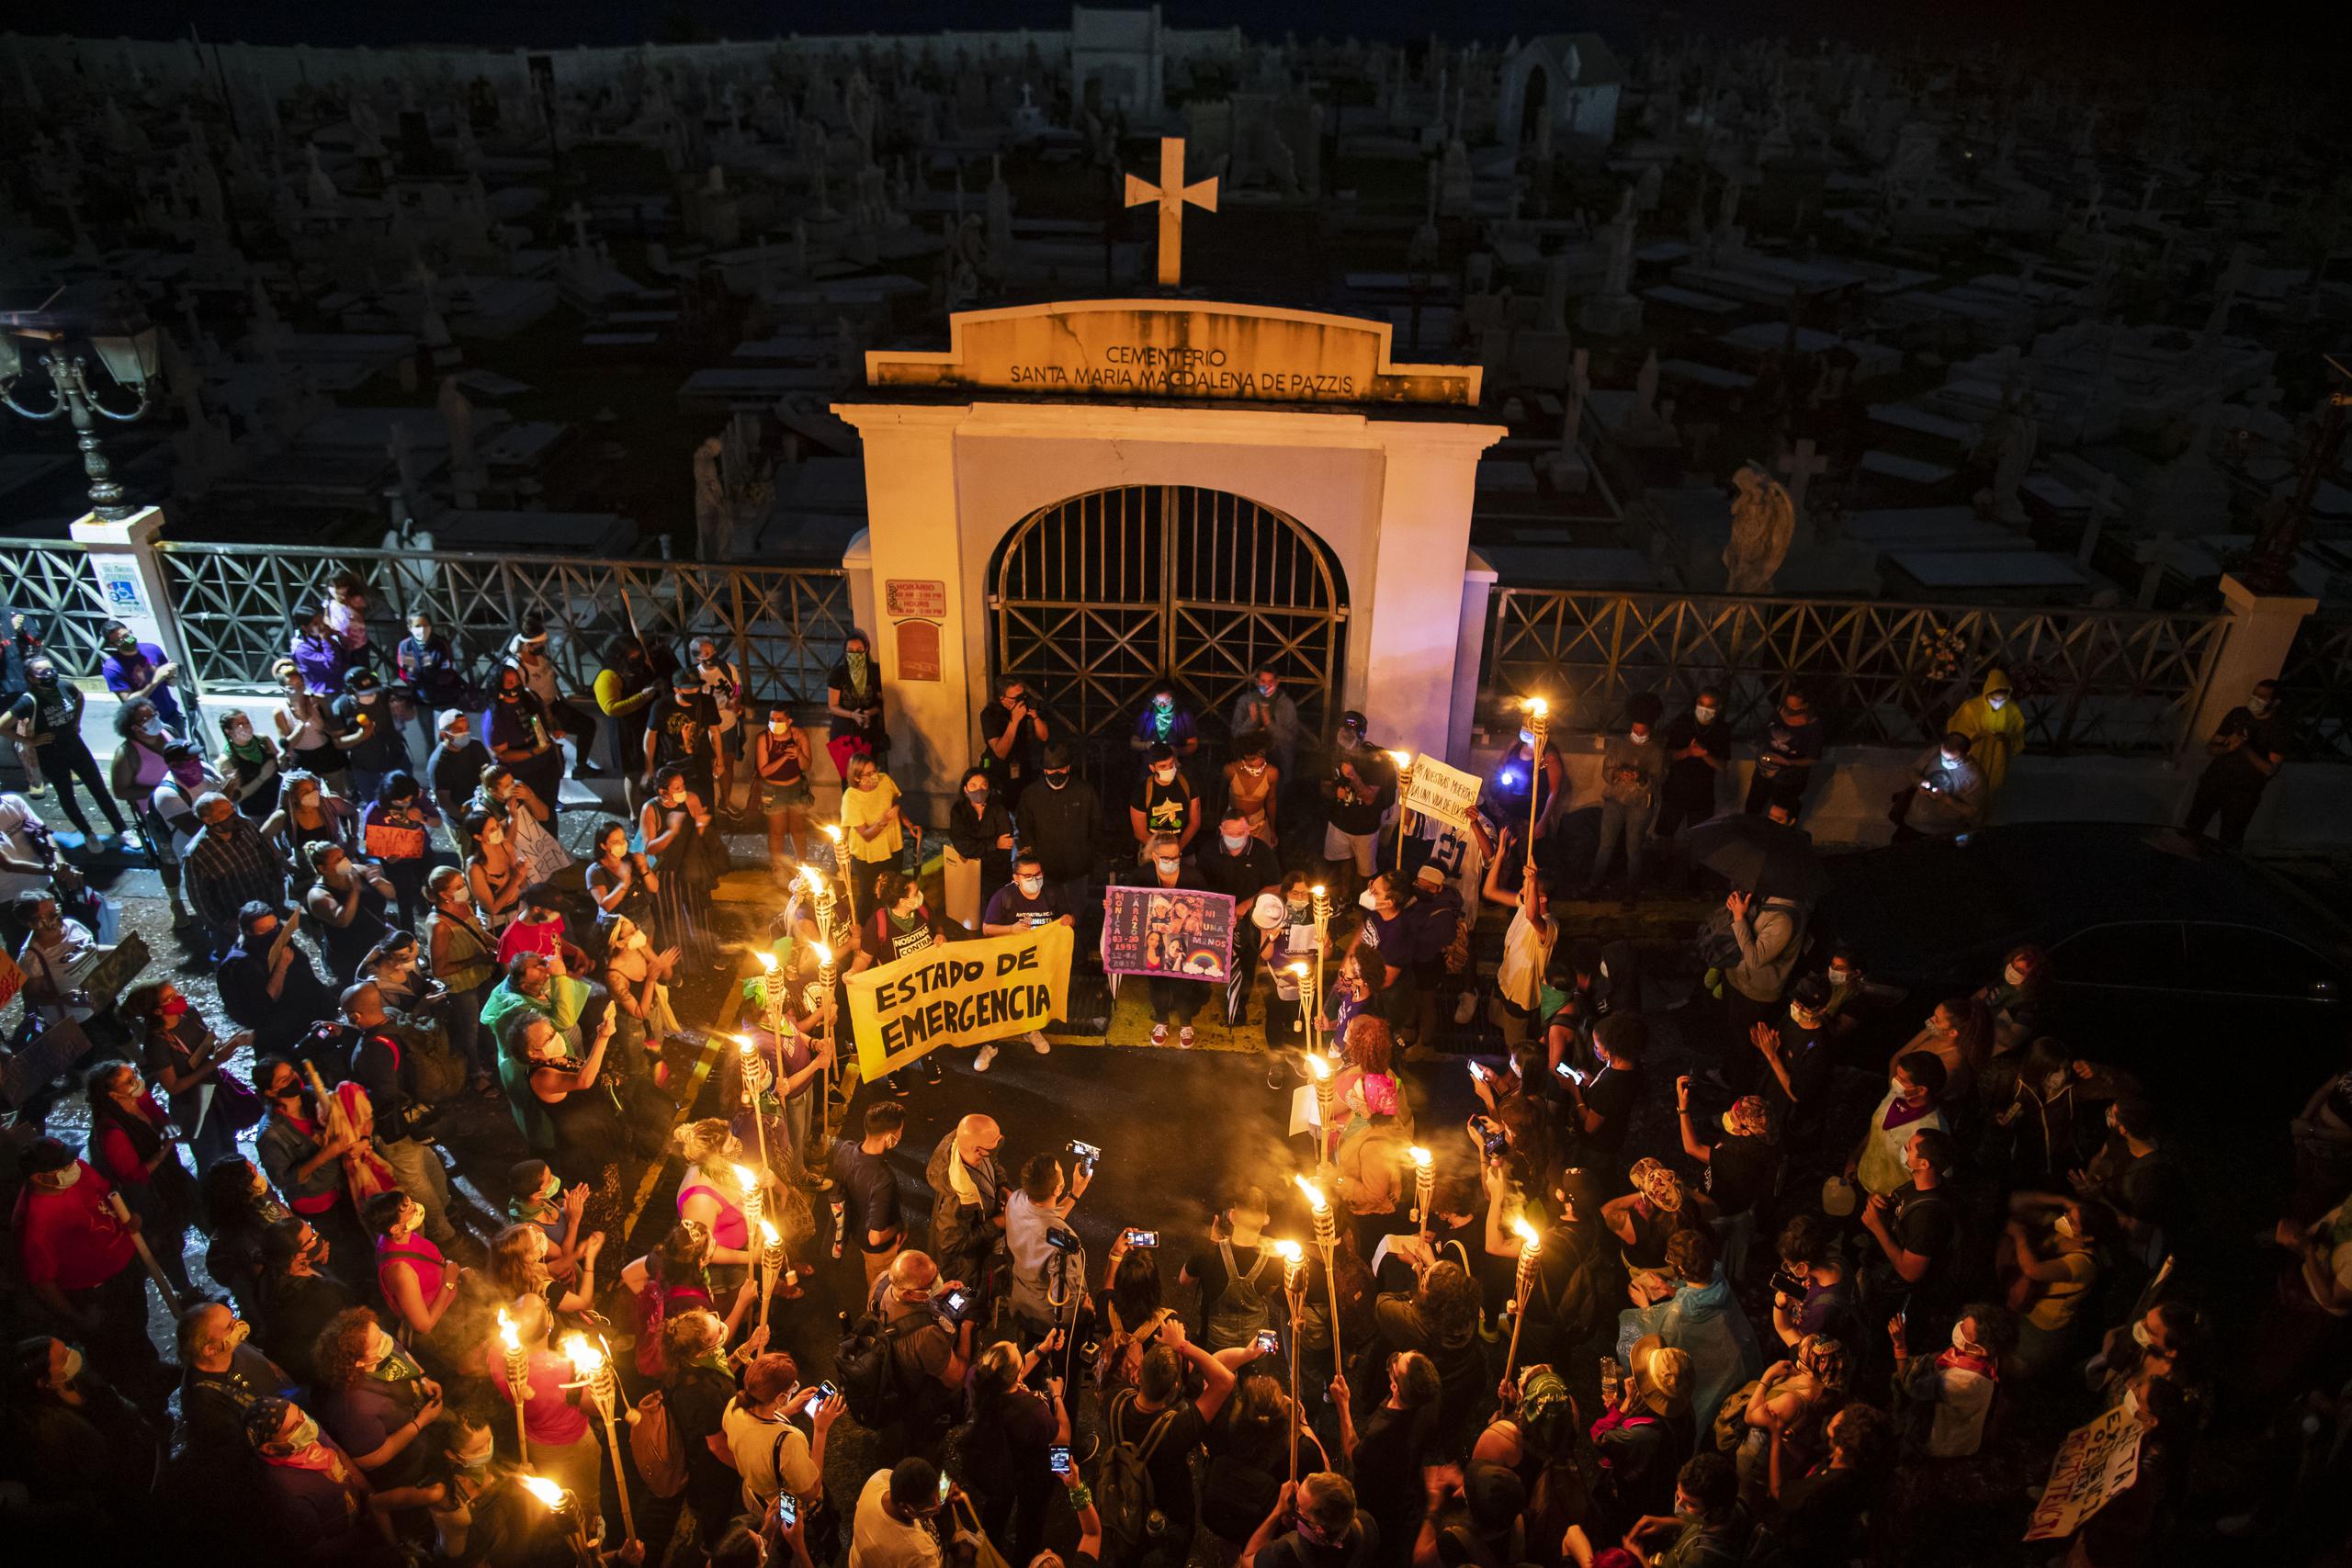 La Colectiva Feminista en Construcción lideró la marcha "Viva nos queremos, las tumbas son para el patriarcado", que salió esta noche desde el cementerio Santa Magdalena de Pazzis hacia La Fortaleza.